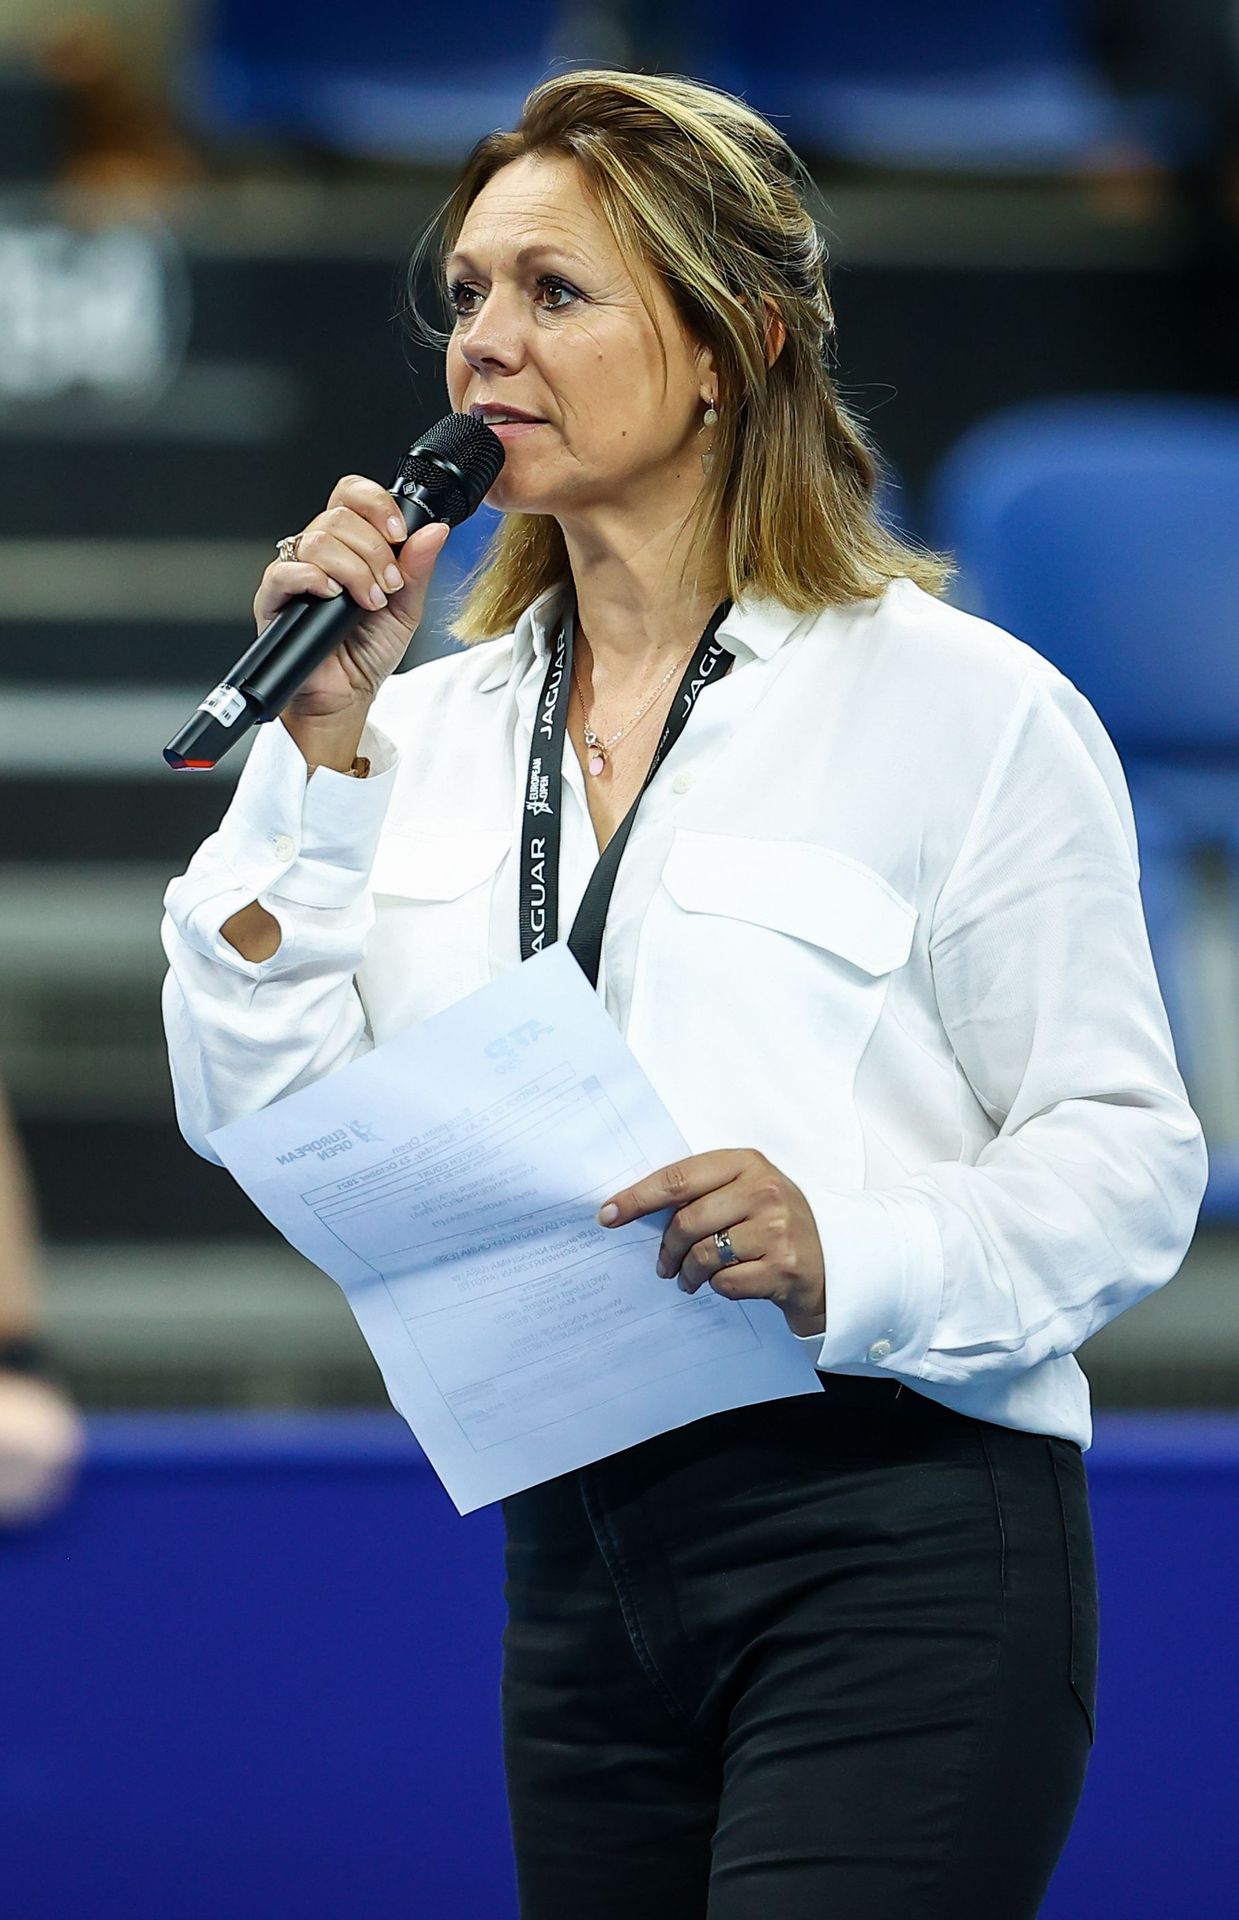 Sabine Appelmans interviewe les joueurs après leurs matches, au tournoi d'Anvers